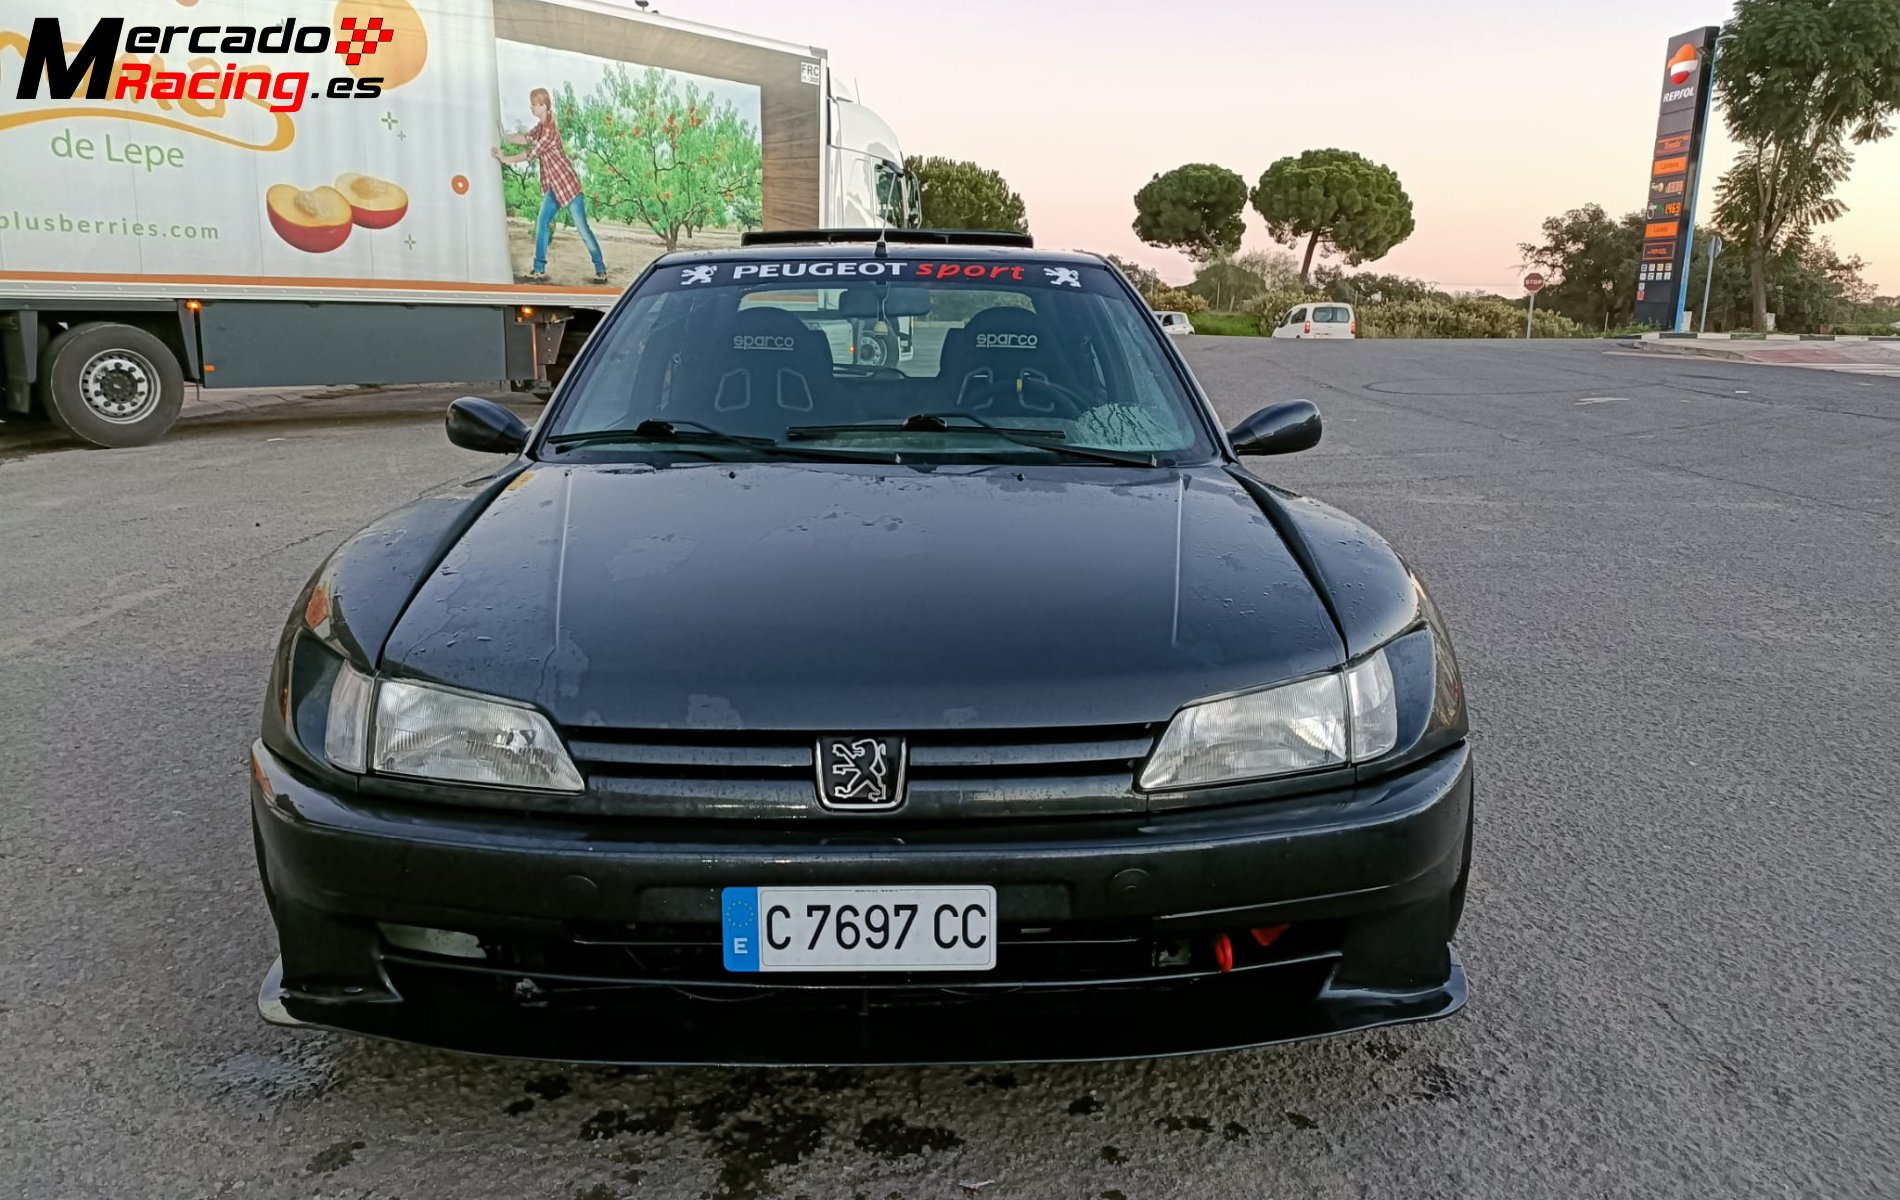 Peugeot 306 maxi